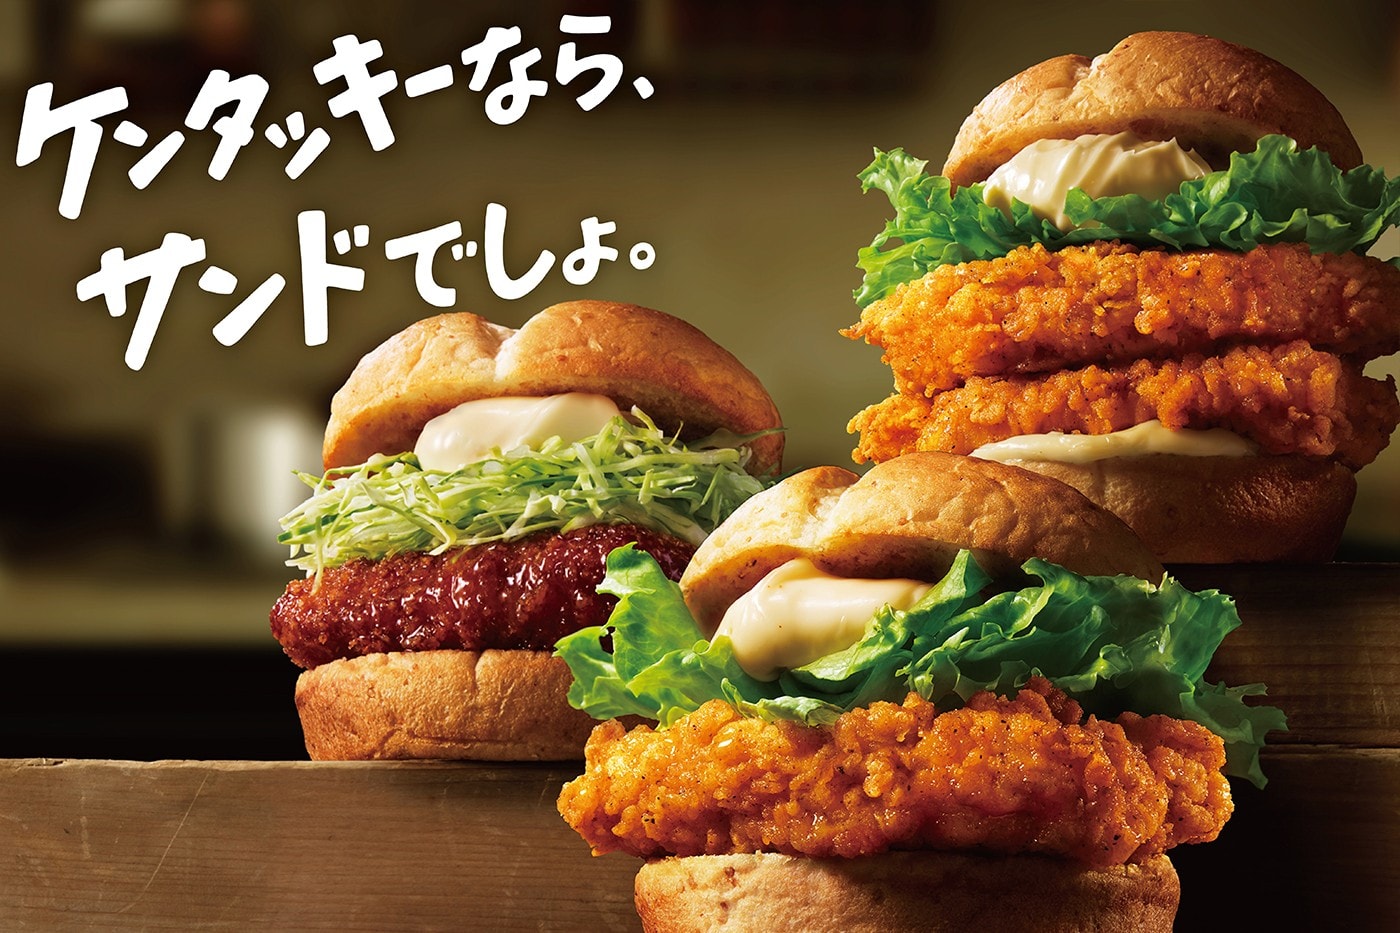 KFC 肯德基限時推出全新「雙份雞柳排漢堡」口味